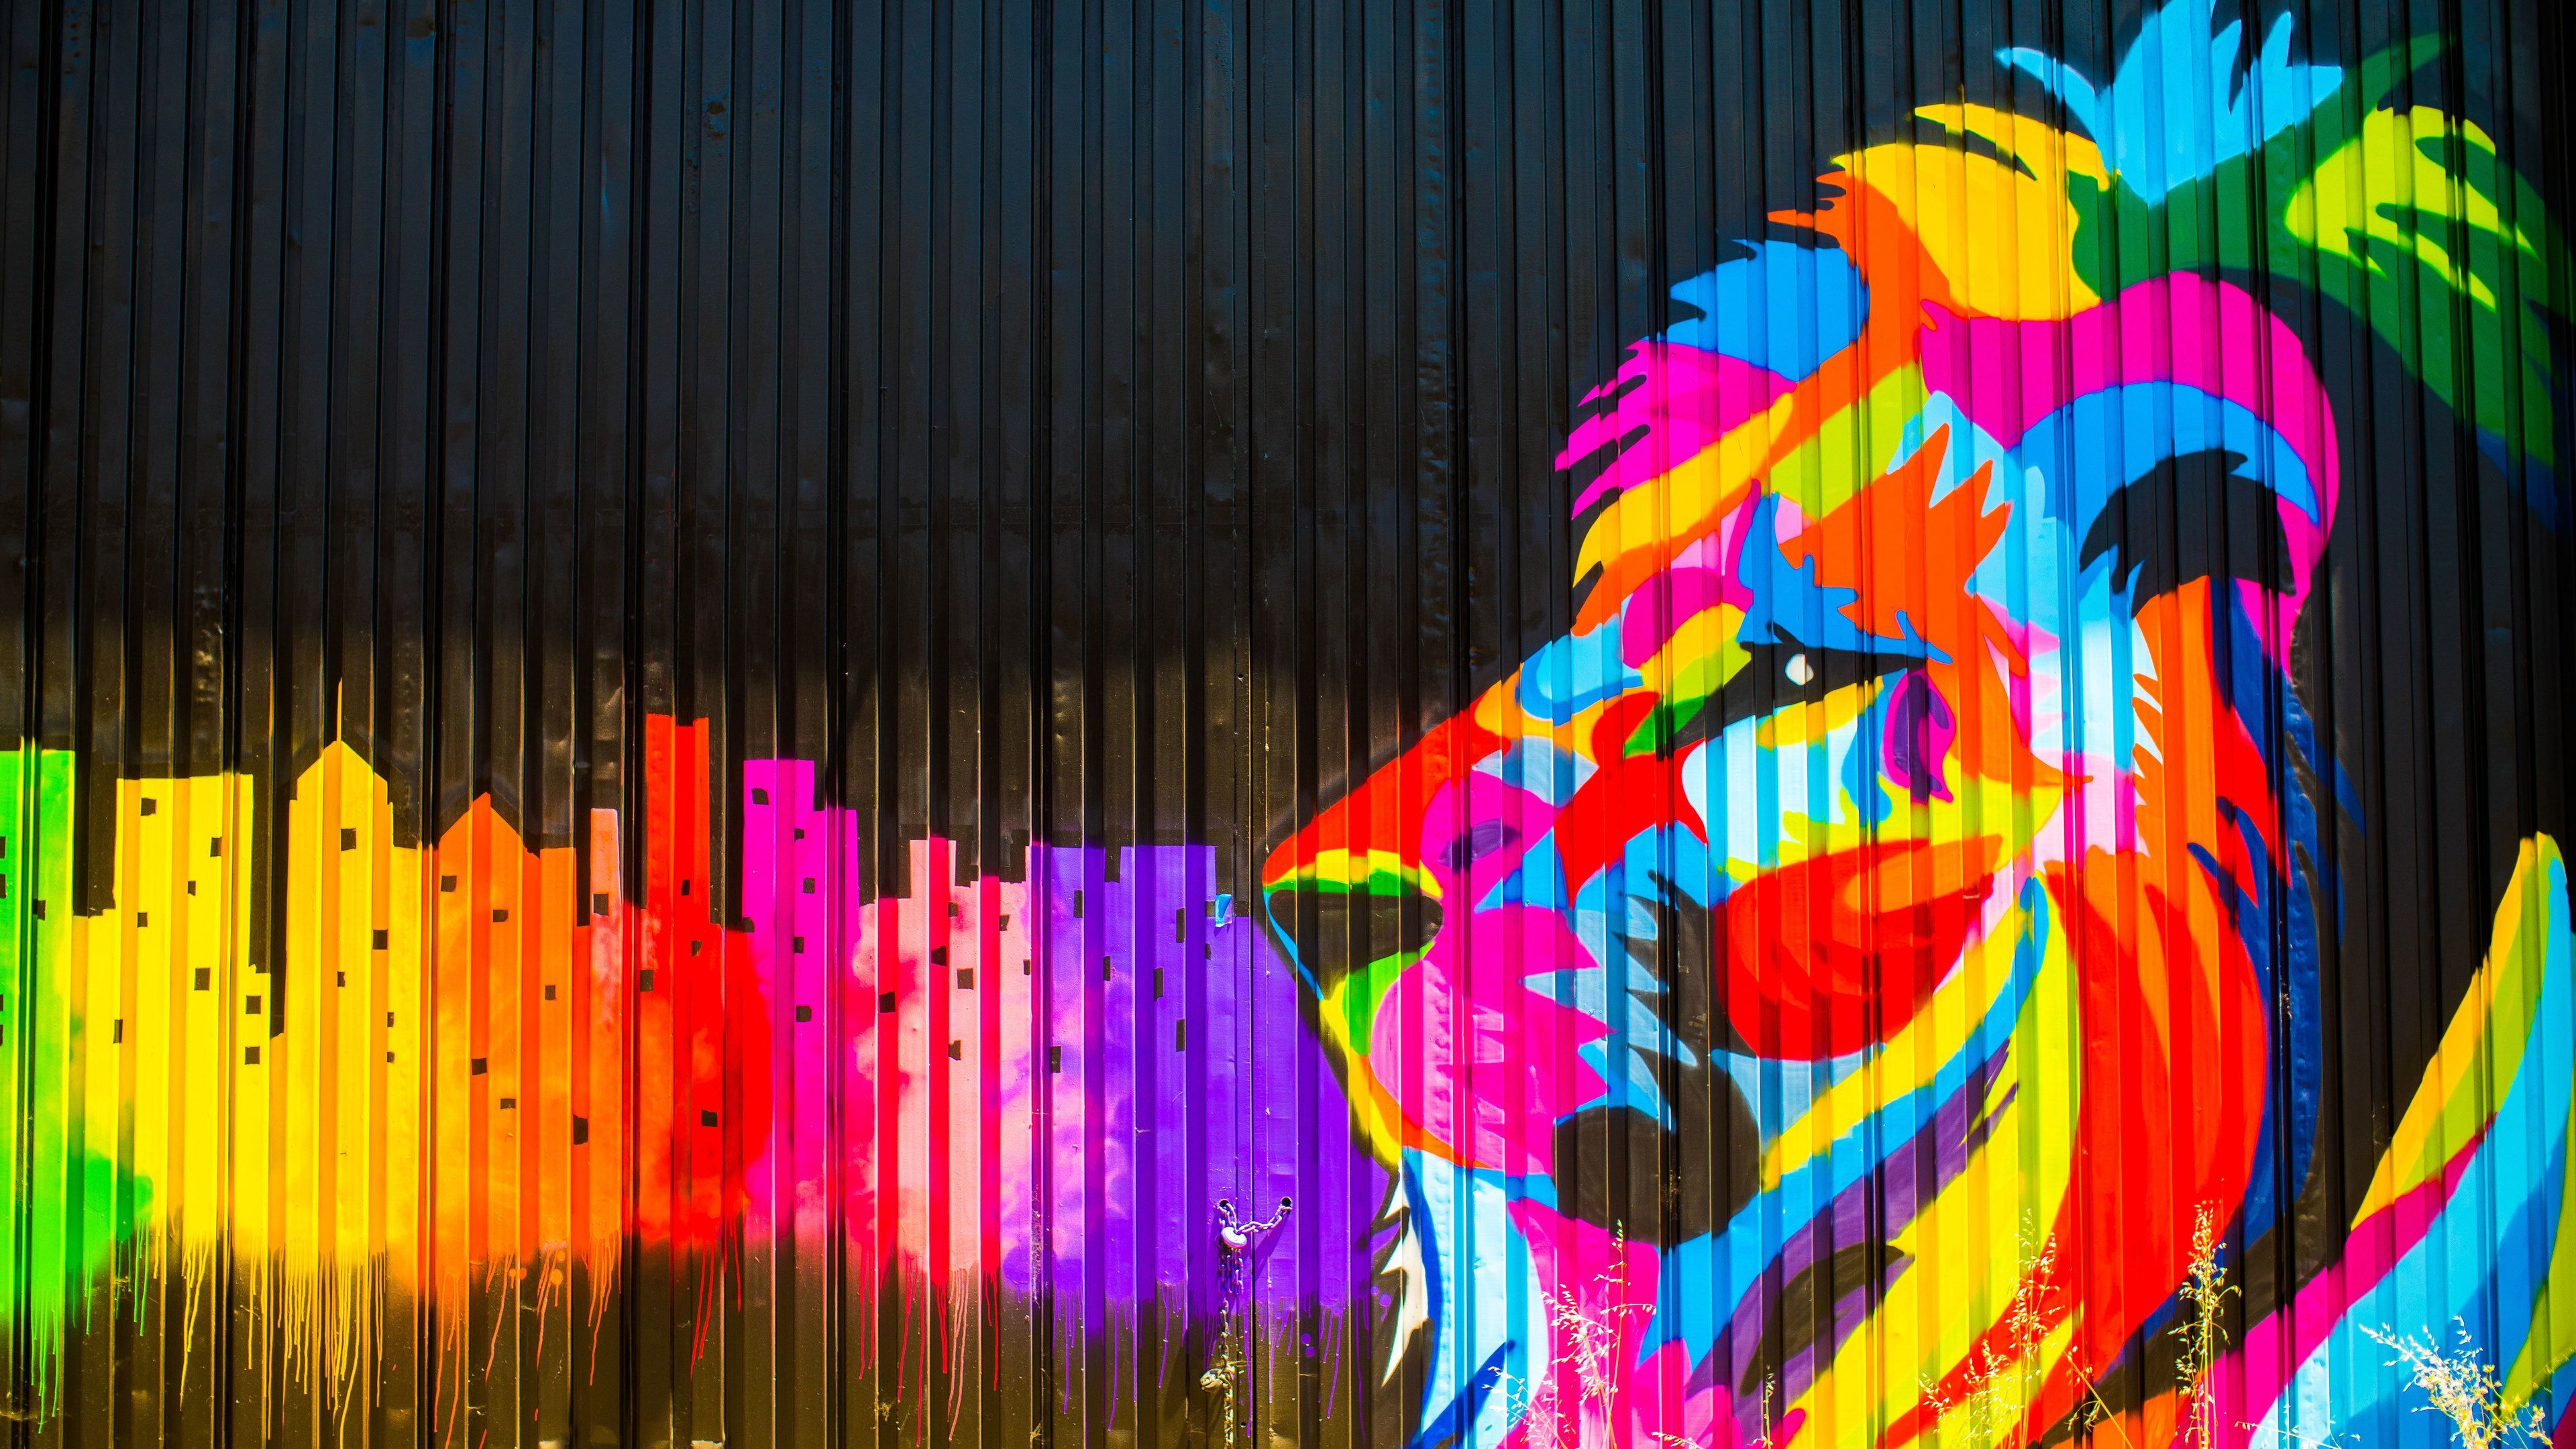 Lion Graffiti 4k Lion Wallpaper, Hd Wallpaper, Graffiti Wallpaper, Digital Art Wallpaper, Artwork Wallpaper, Artist W. Graffiti Wallpaper, Lion Art, Graffiti